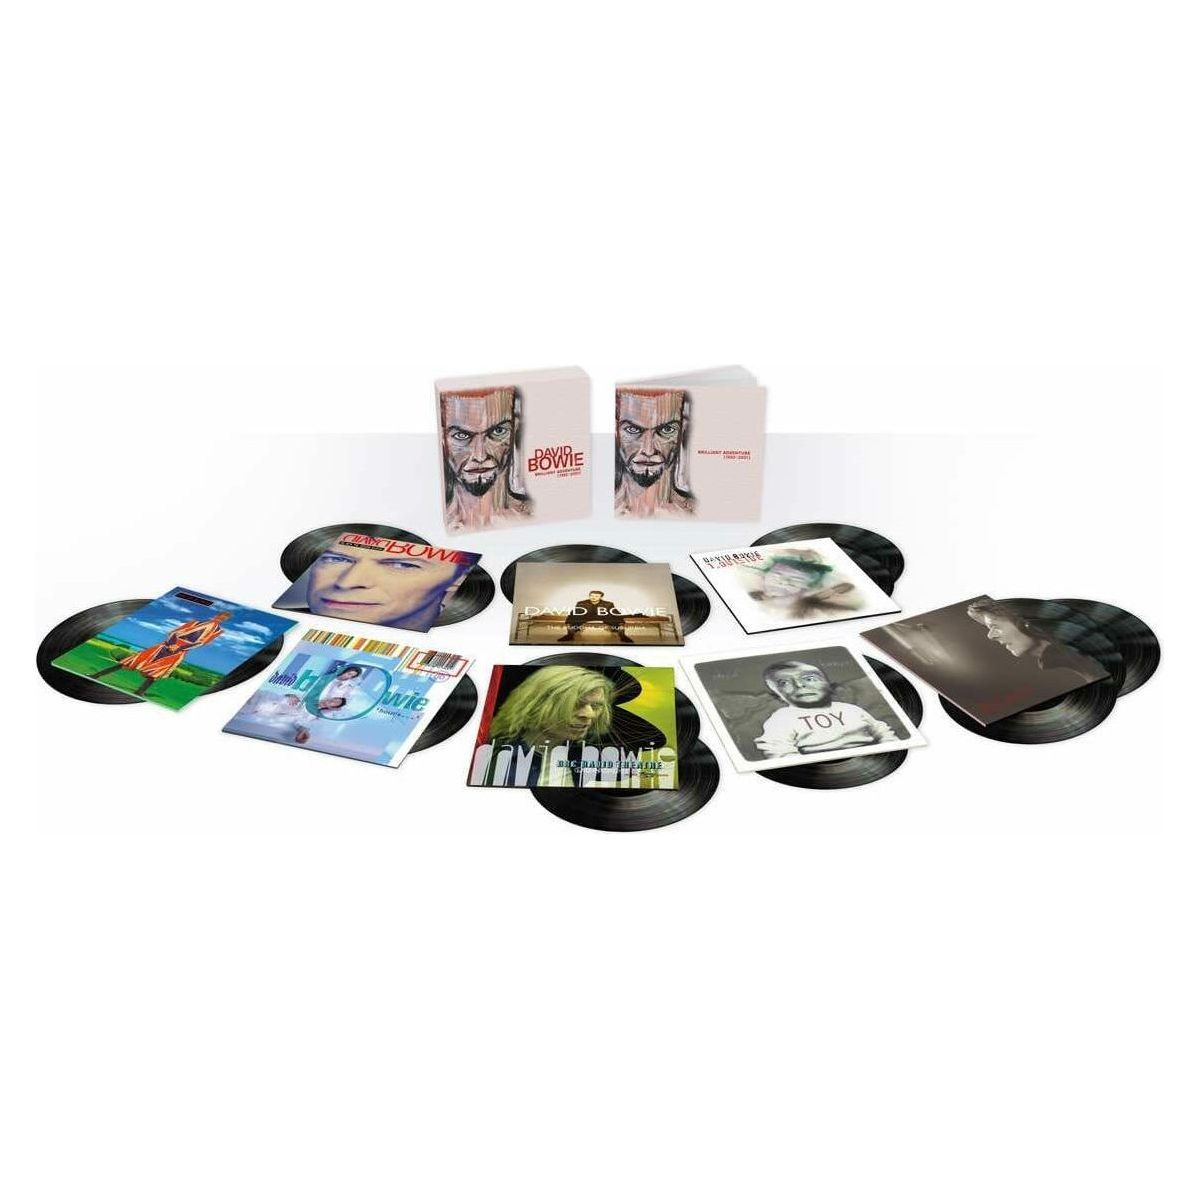 David Bowie - Brilliant Adventure 1992 - 2001 18x LP Box Set